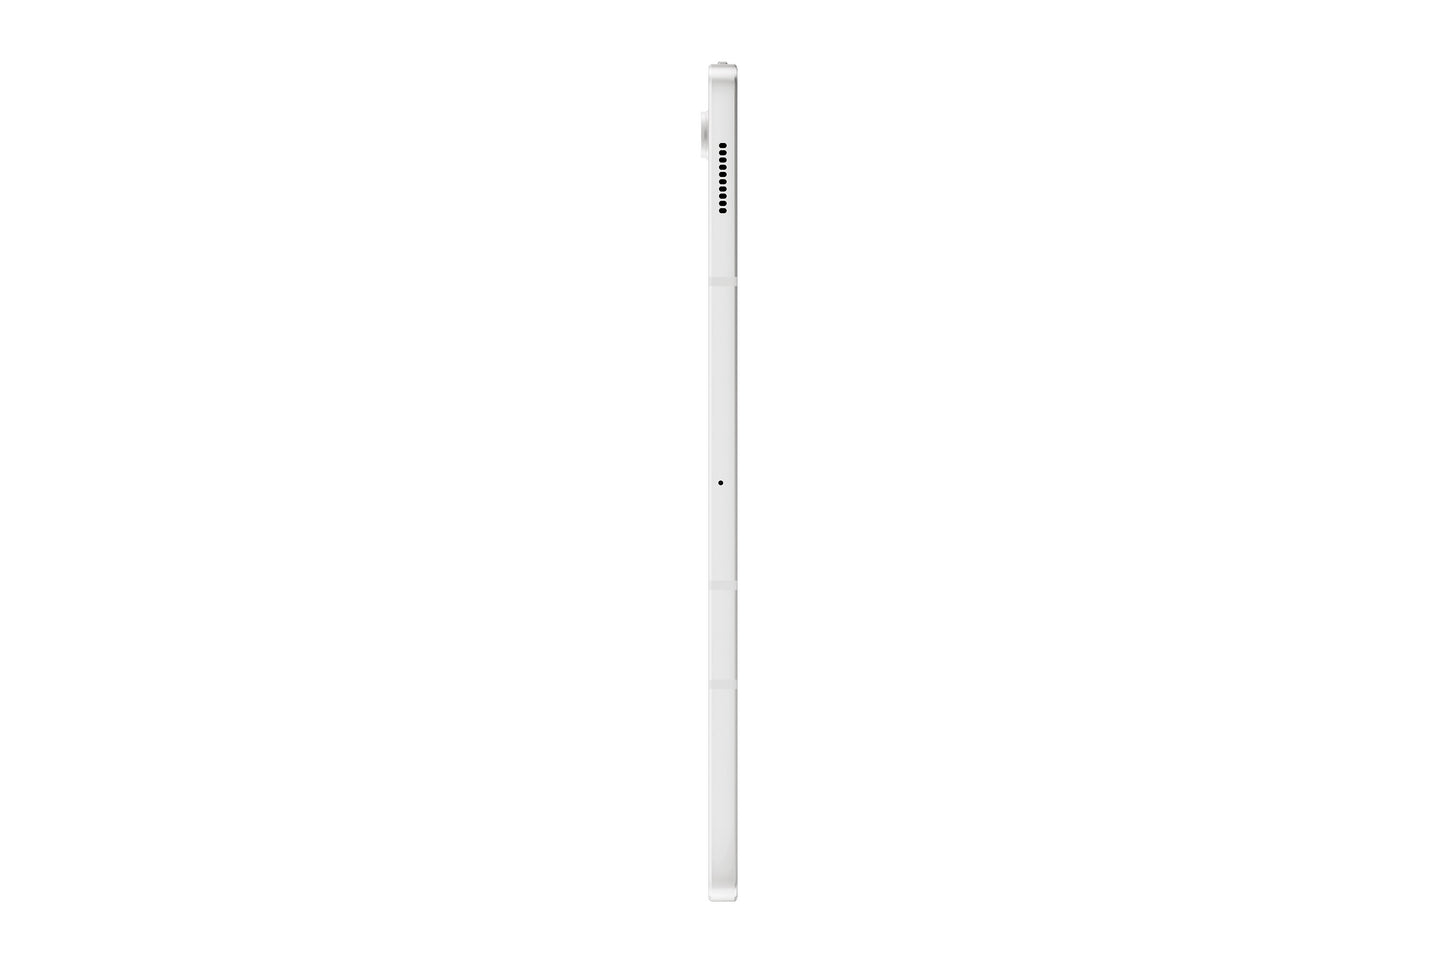 Samsung Galaxy Tab S7 FE 64GB LTE Mystic Silver